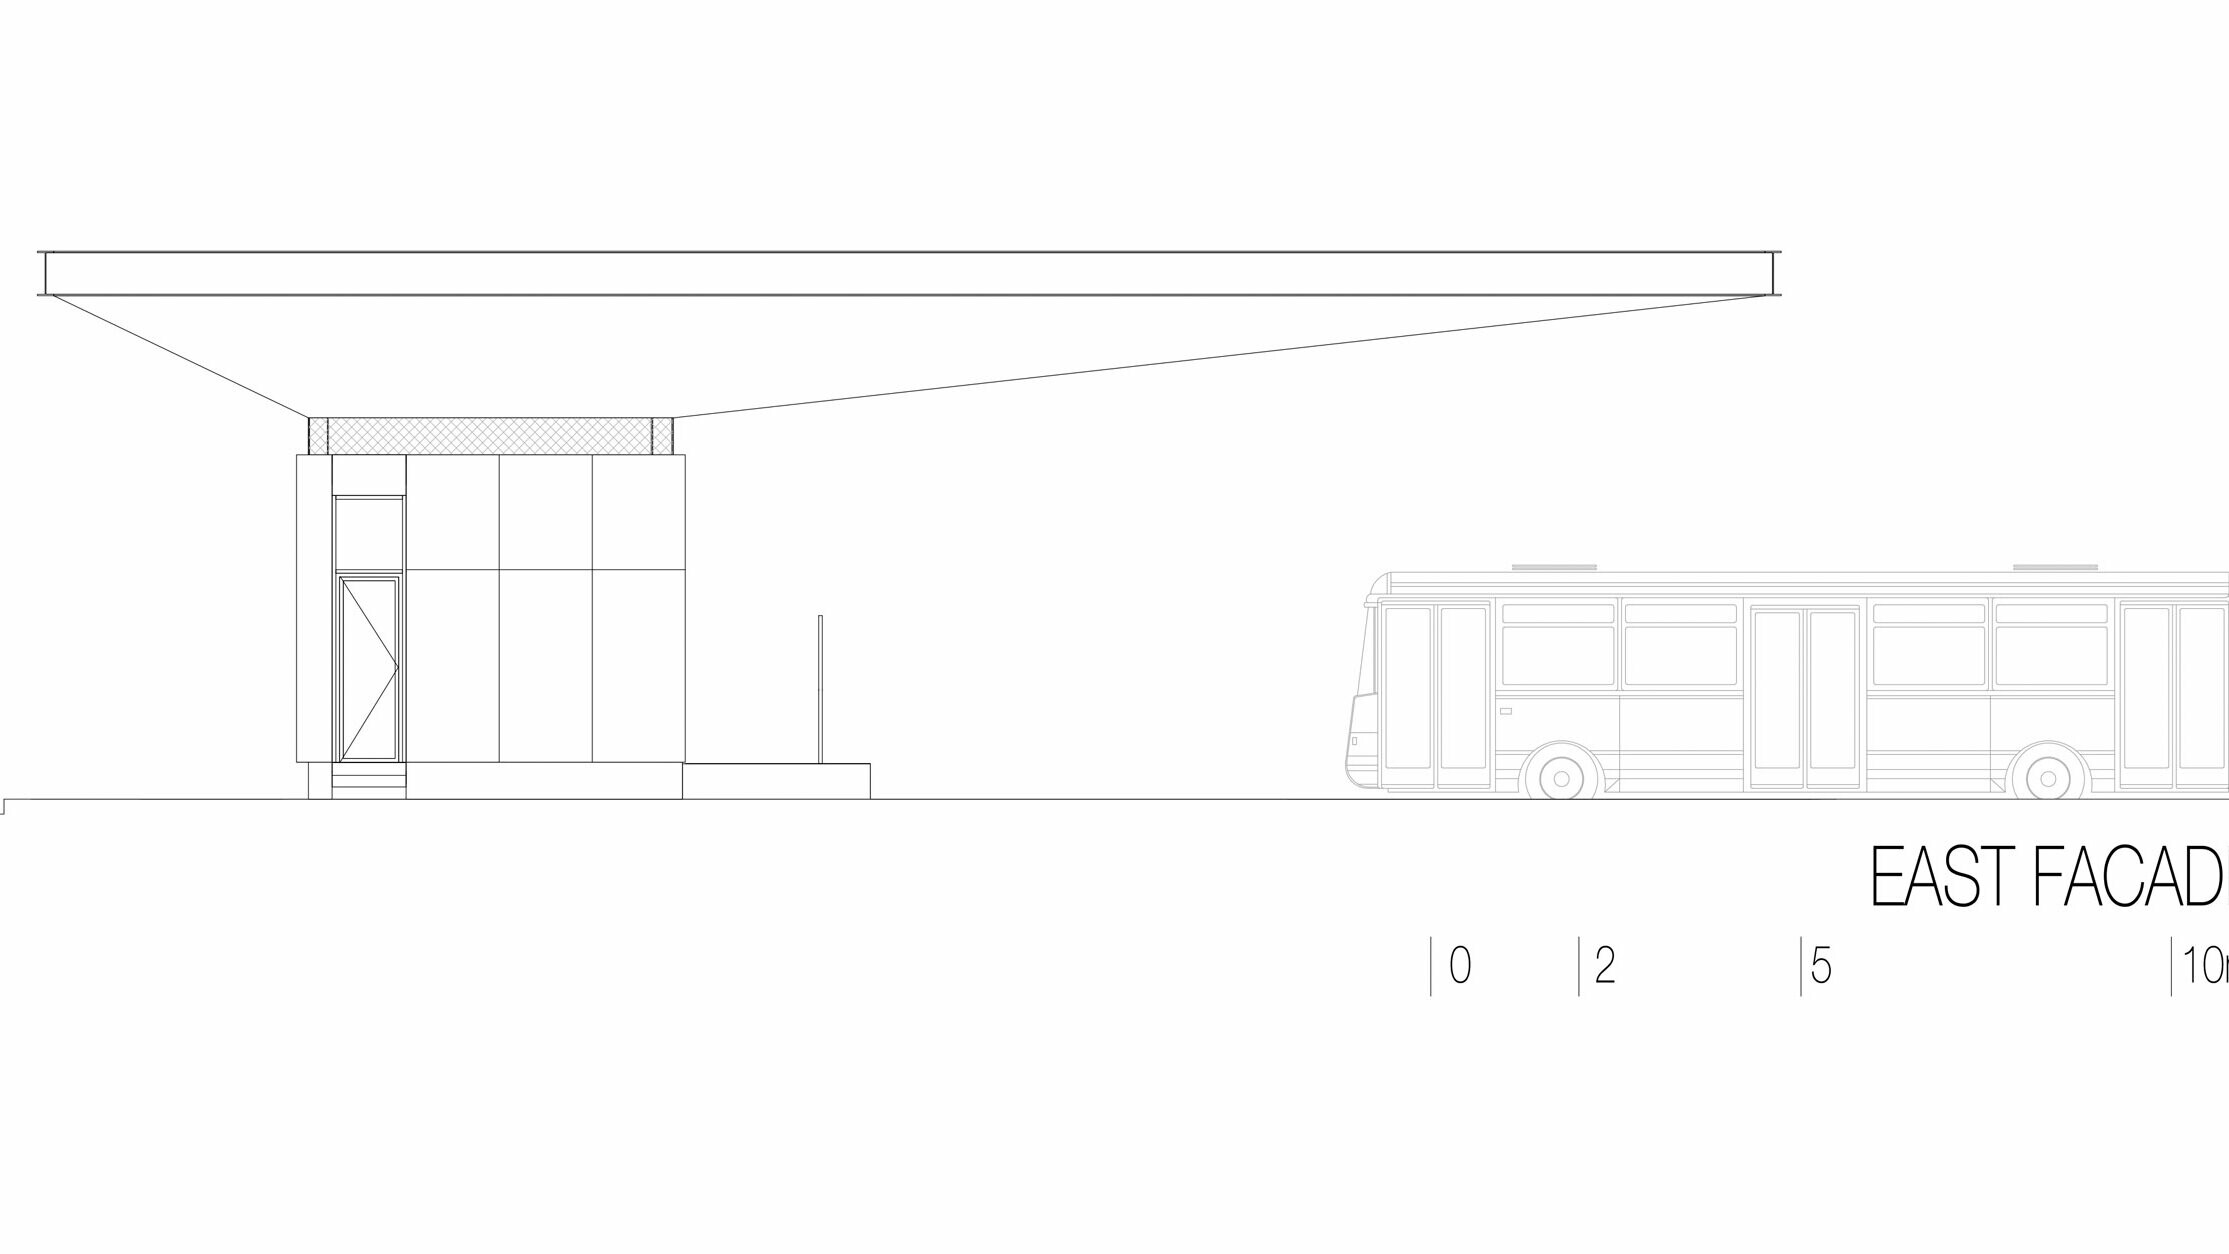 Výkres ukazuje východní pohled na autobusovou zastávku "Autobusni Kolodvor Slavonski Brod" v Chorvatsku. Ilustrace zdůrazňuje štíhlou horizontální strukturu bílé střechy Prefalz od PREFA, která se táhne po celé délce budovy. Pod střechou je obdélníková konstrukce s jasnými liniemi a velkými prosklenými plochami. Na obrázku je vpravo vidět autobus, který znázorňuje proporce zastávky ve vztahu k vozidlu. Východní elevace zdůrazňuje moderní a funkční architekturu stanice, která díky použití skla a hliníku vytváří světlou a přívětivou atmosféru.